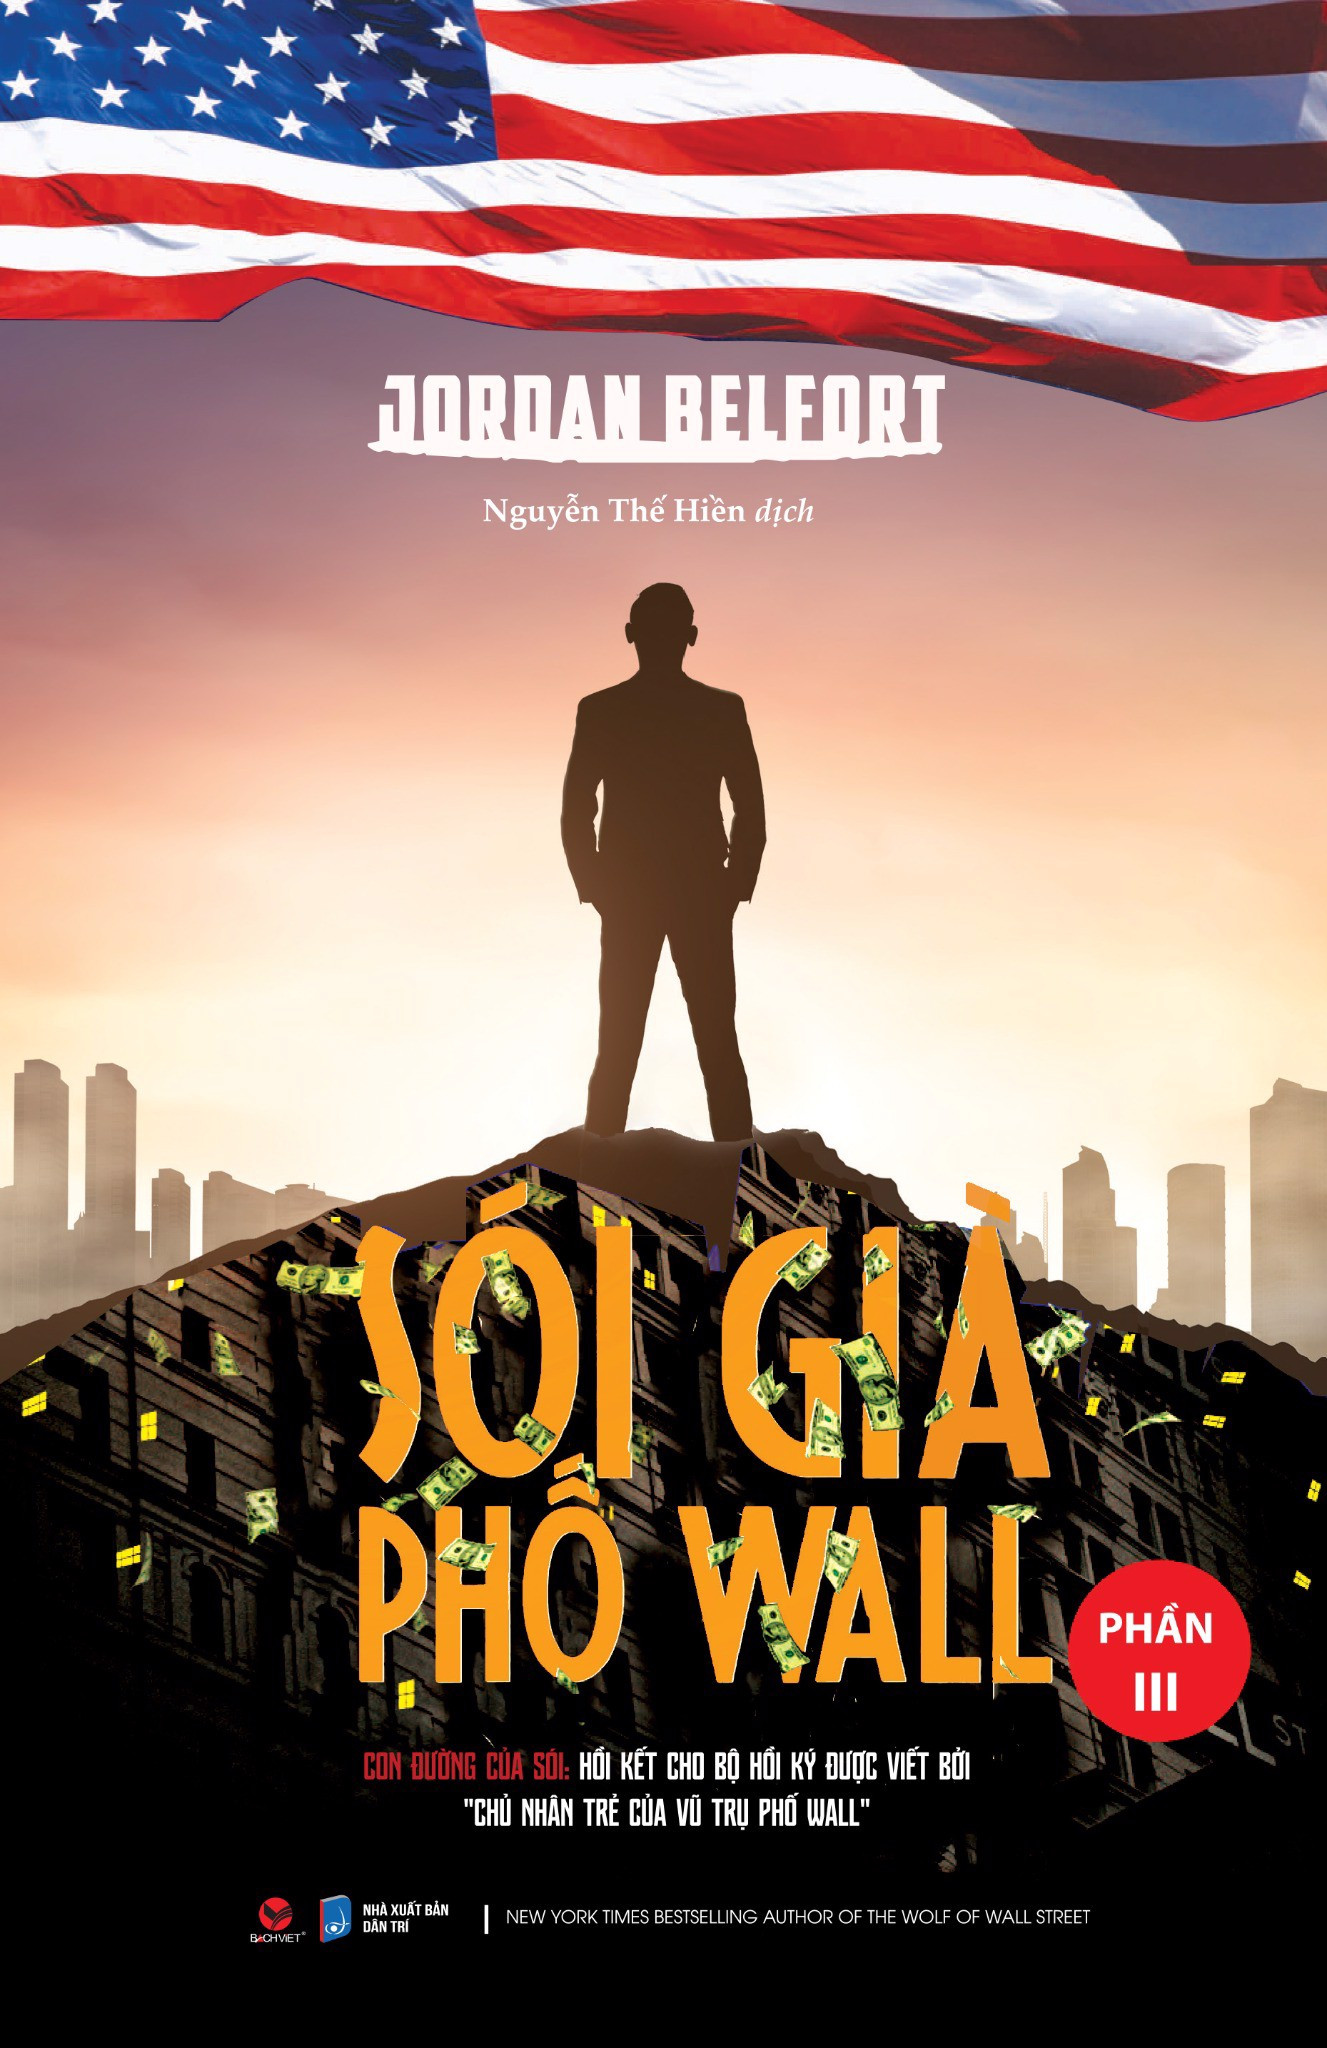 Hình ảnh Sói Già Phố Wall (Phần 3) - Jor.dan Belford - Nguyễn Thế Hiền dịch - (bìa mềm)